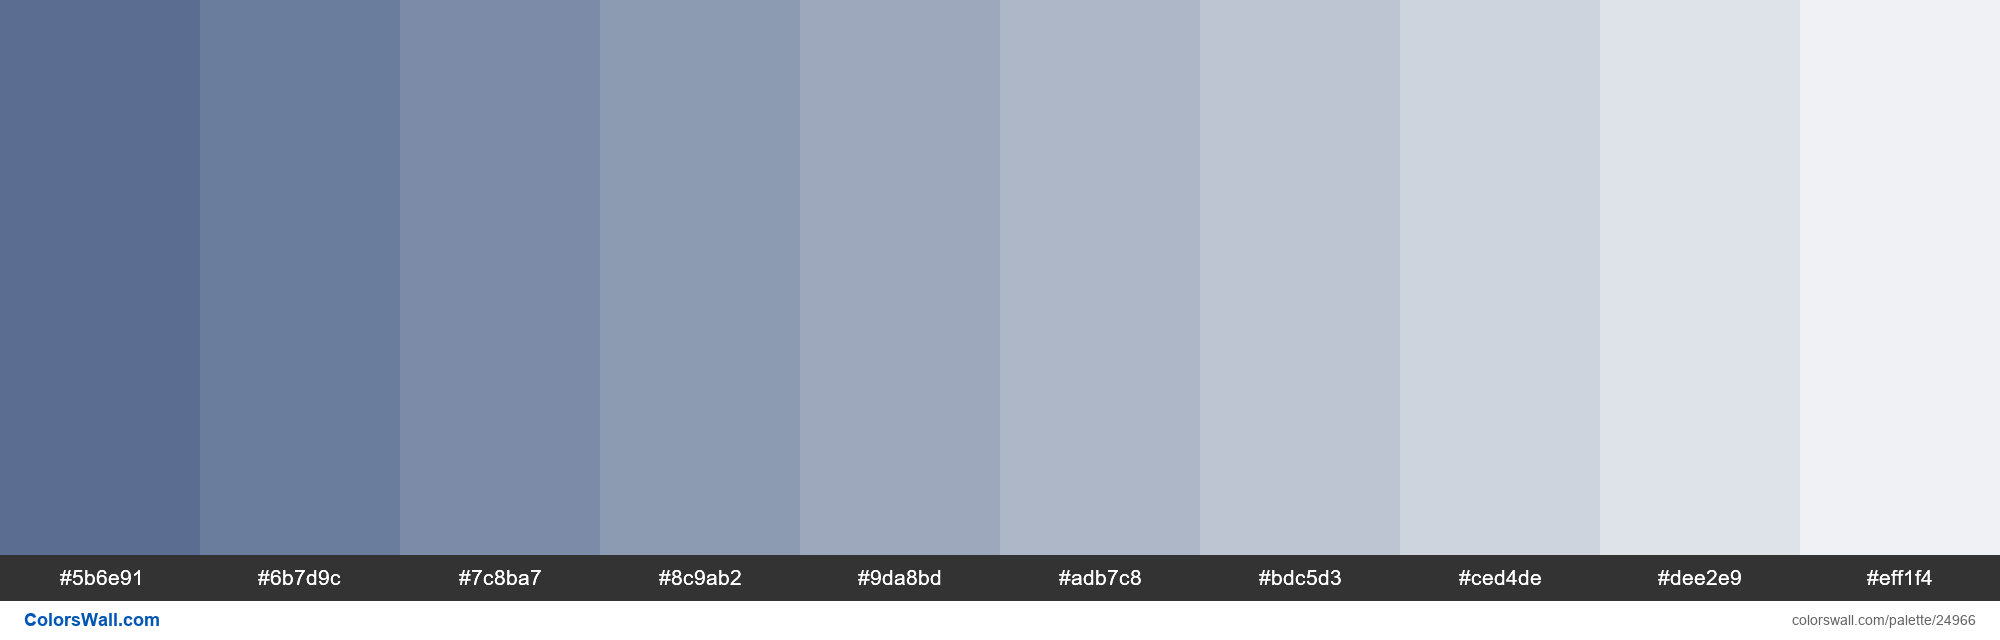 Tints of Waikawa Grey color #5B6E91 hex | ColorsWall